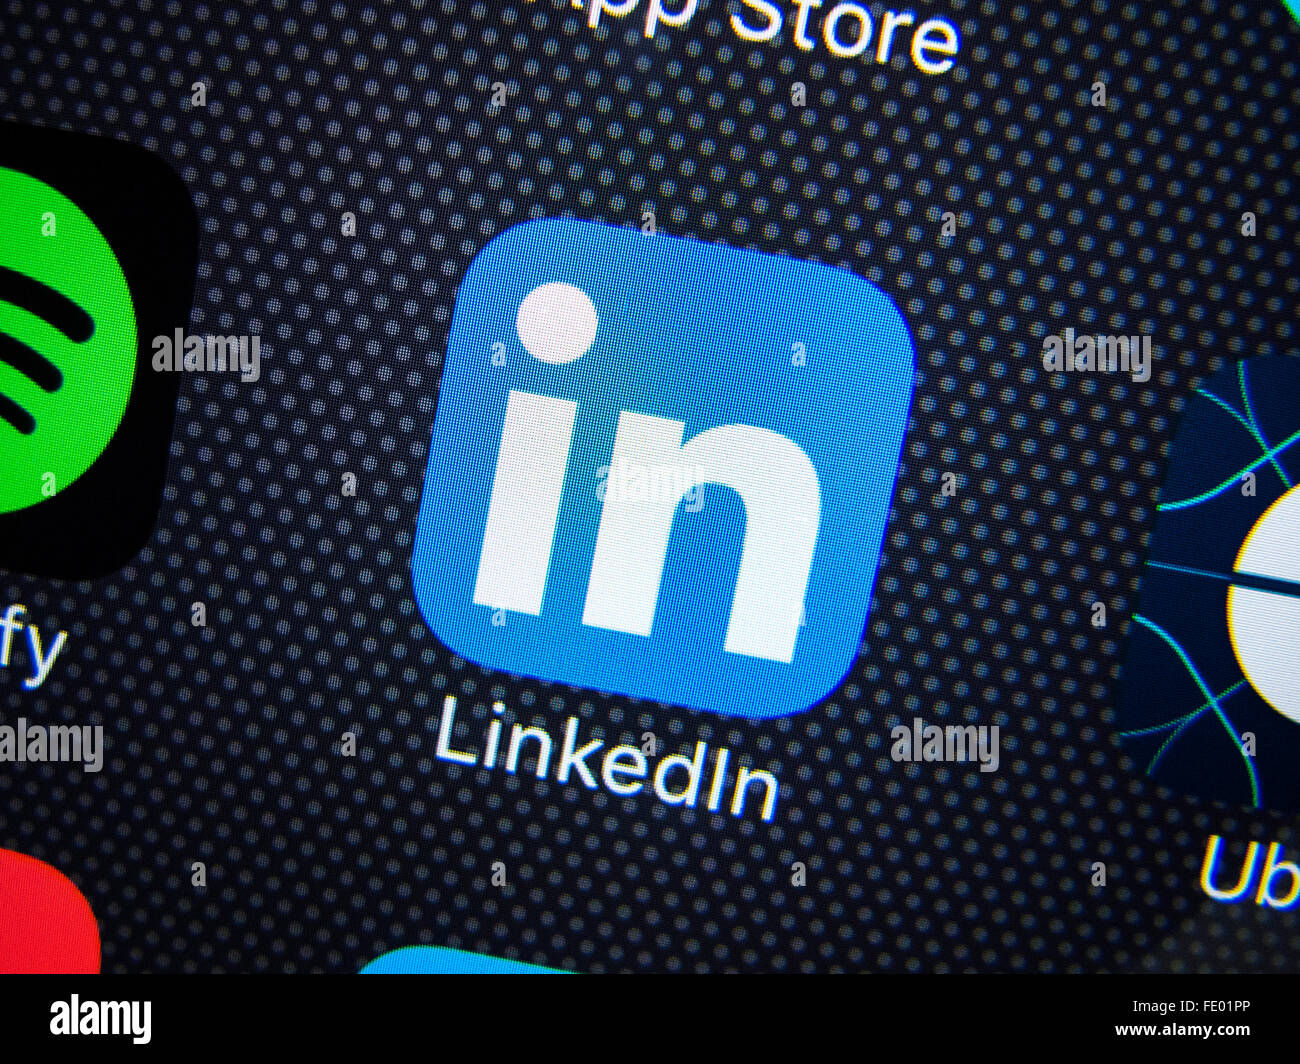 Application de réseau social professionnel LinkedIn logo sur écran de téléphone intelligent Banque D'Images